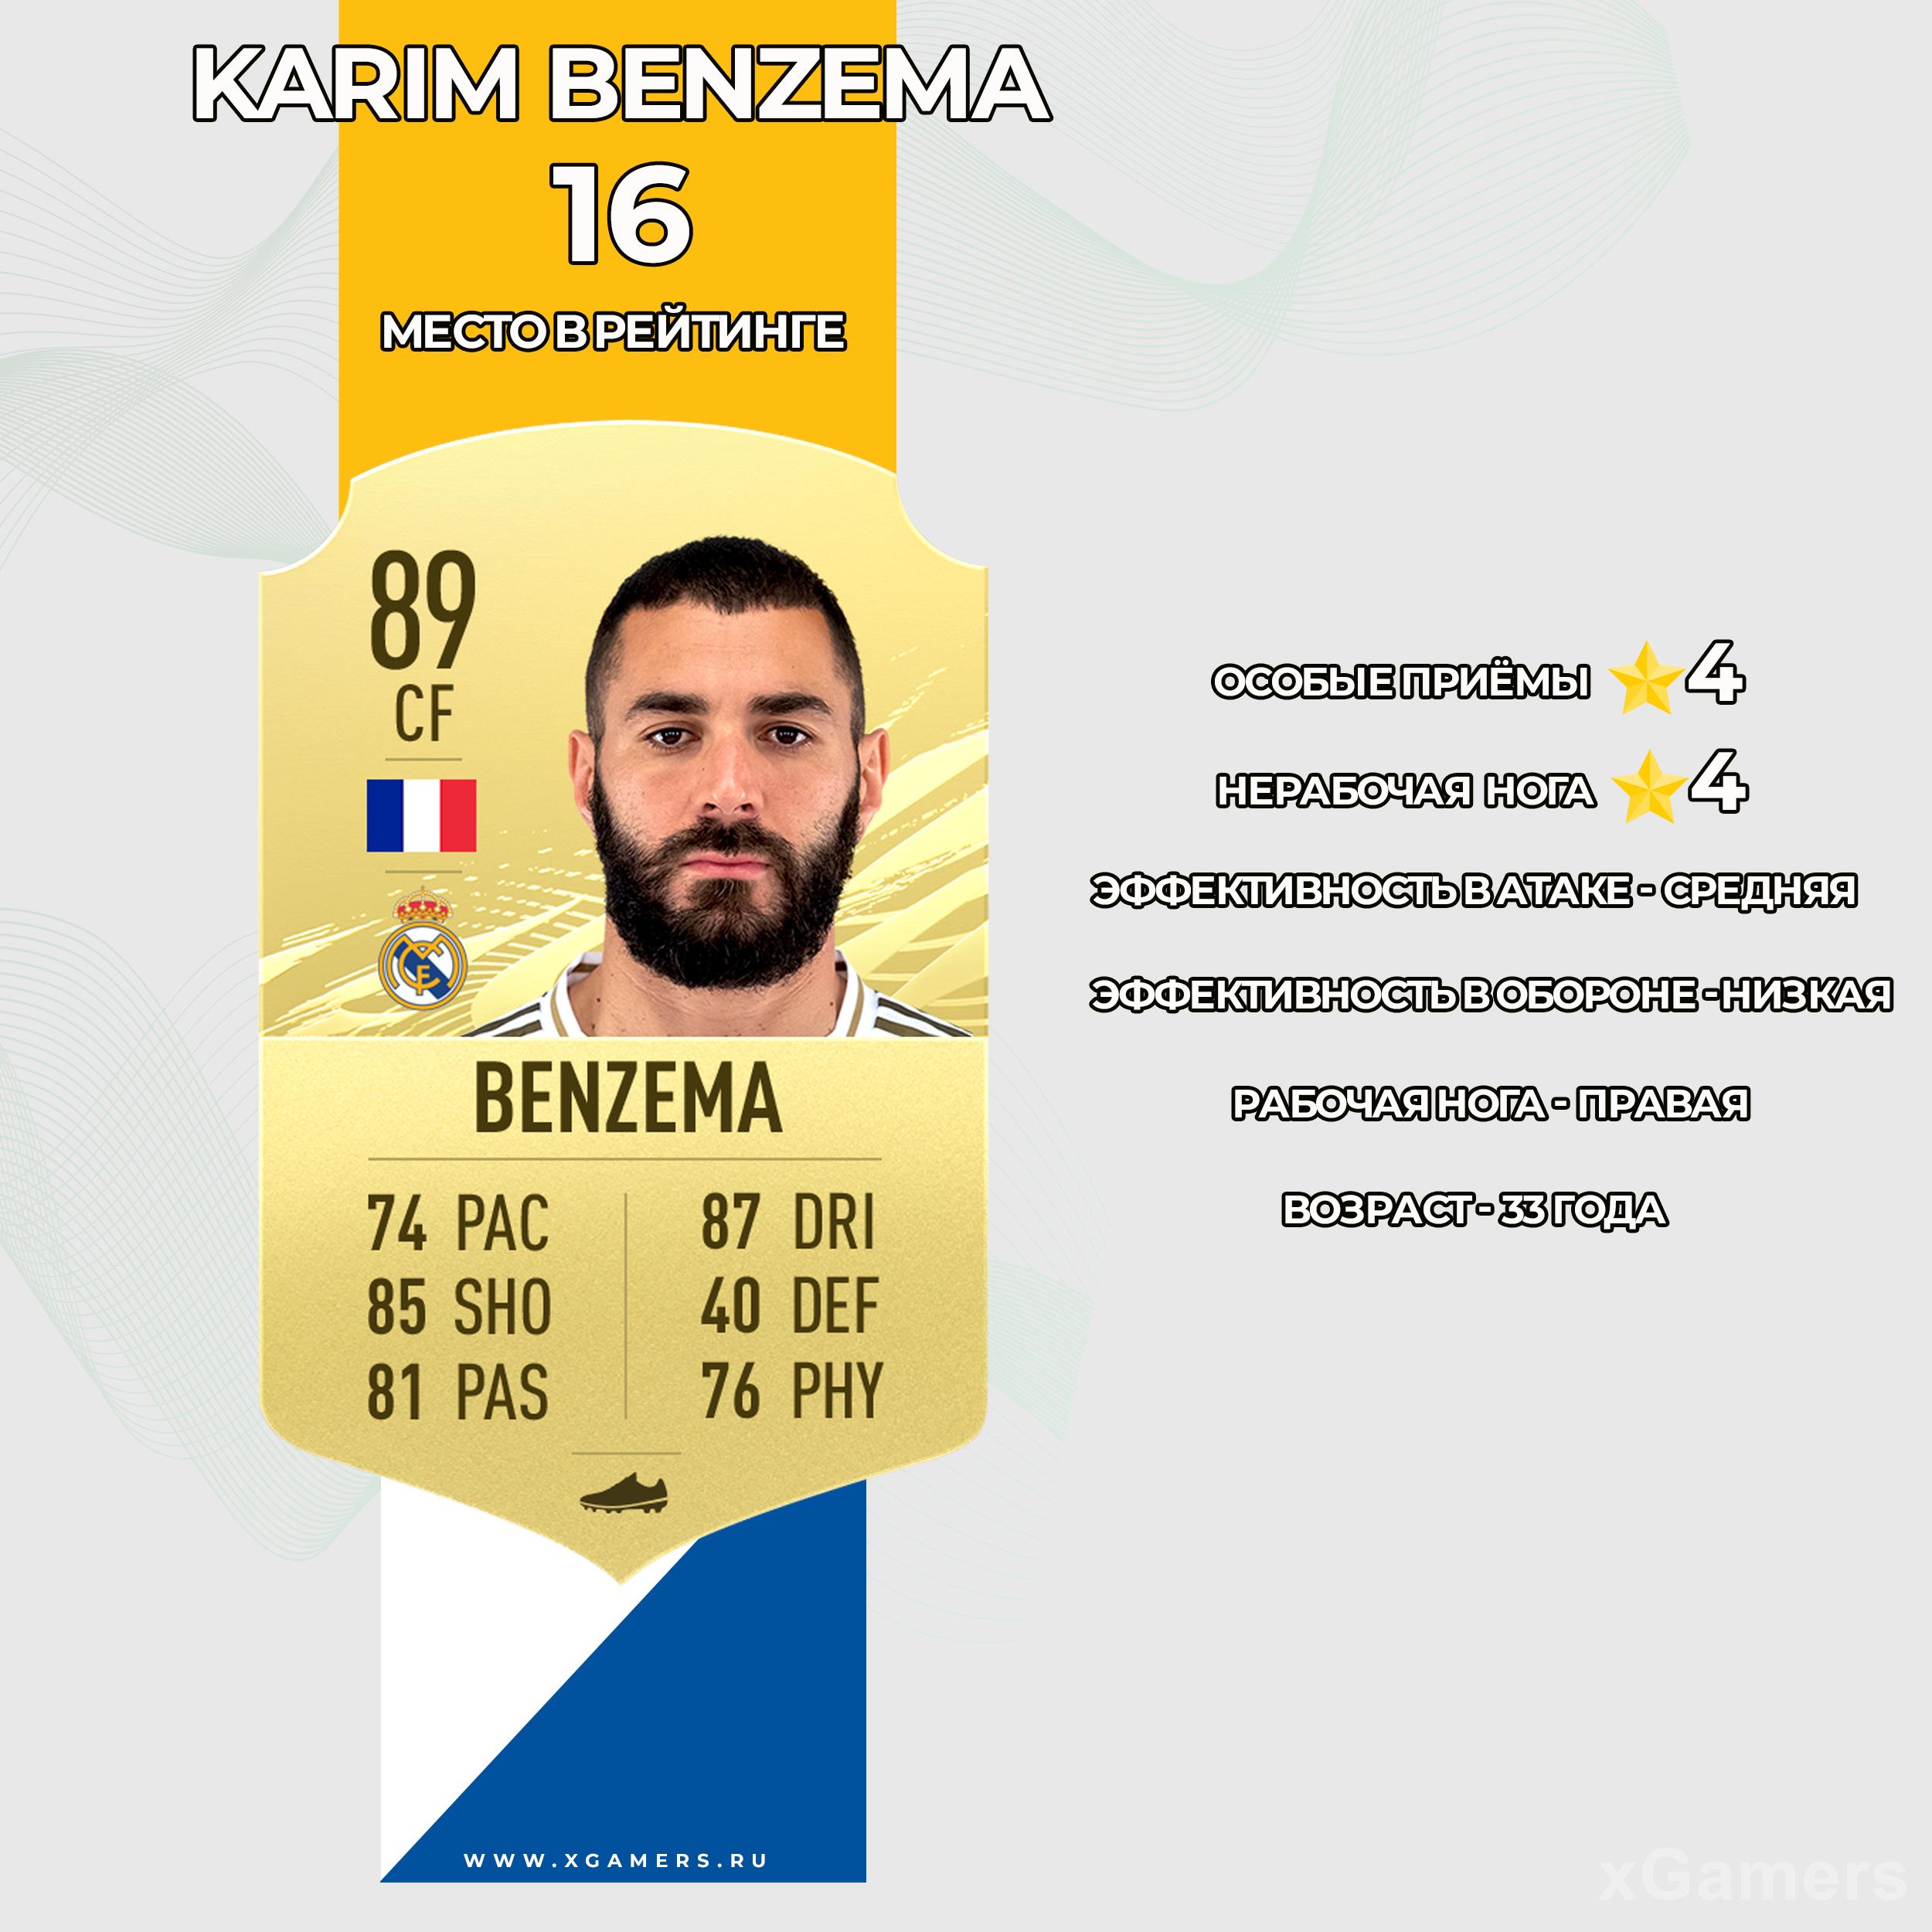 Карточка игрока Реал Мадрида в FIFA 21 - Карима Бензема